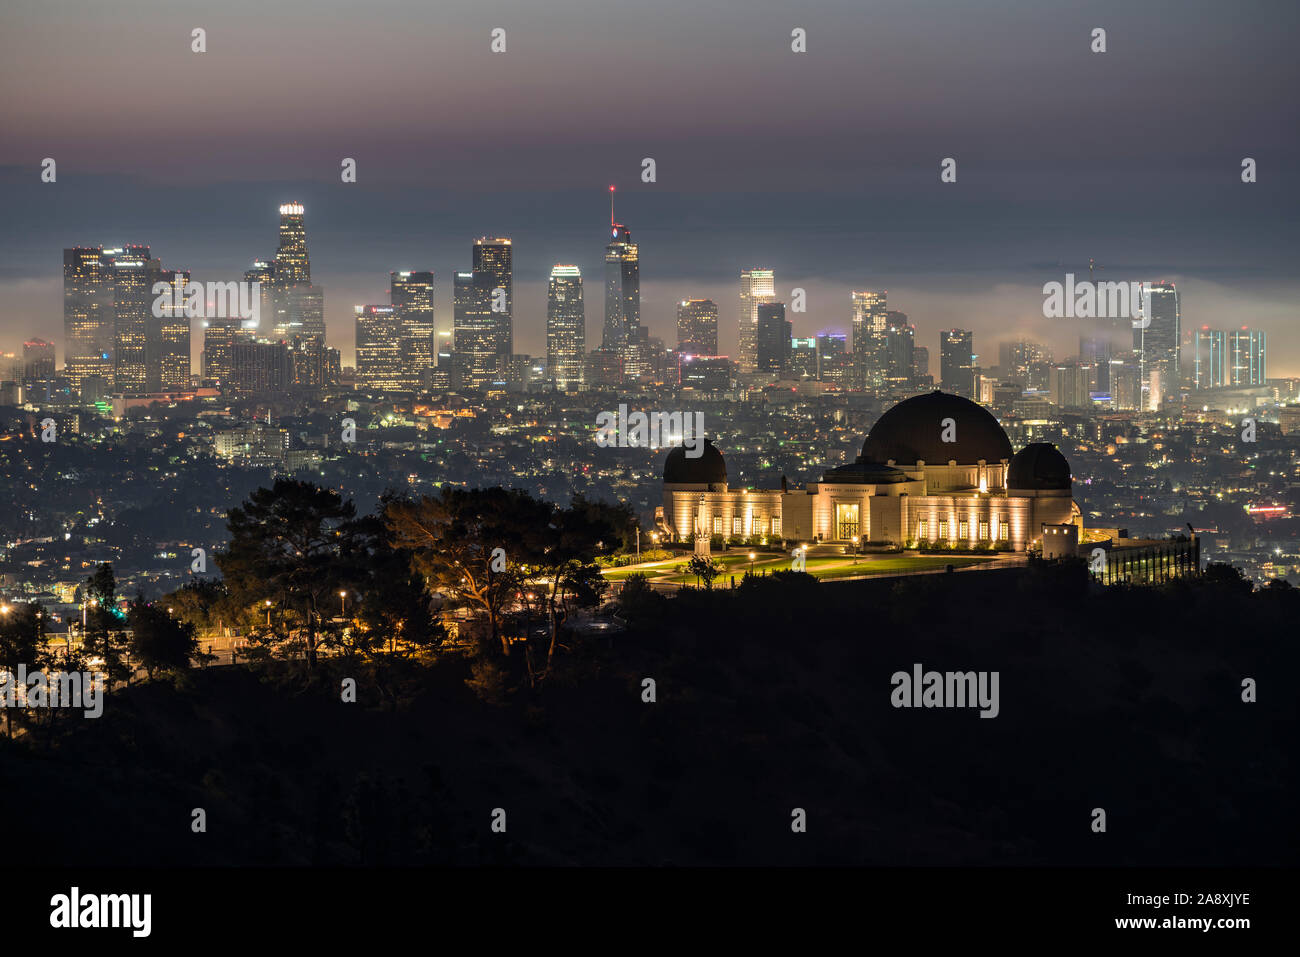 Los Angeles, California, Stati Uniti d'America - 10 Novembre 2019: Foggy predawn twilight vista del centro cittadino di Los Angeles e il Parco Osservatorio Griffith. Foto Stock